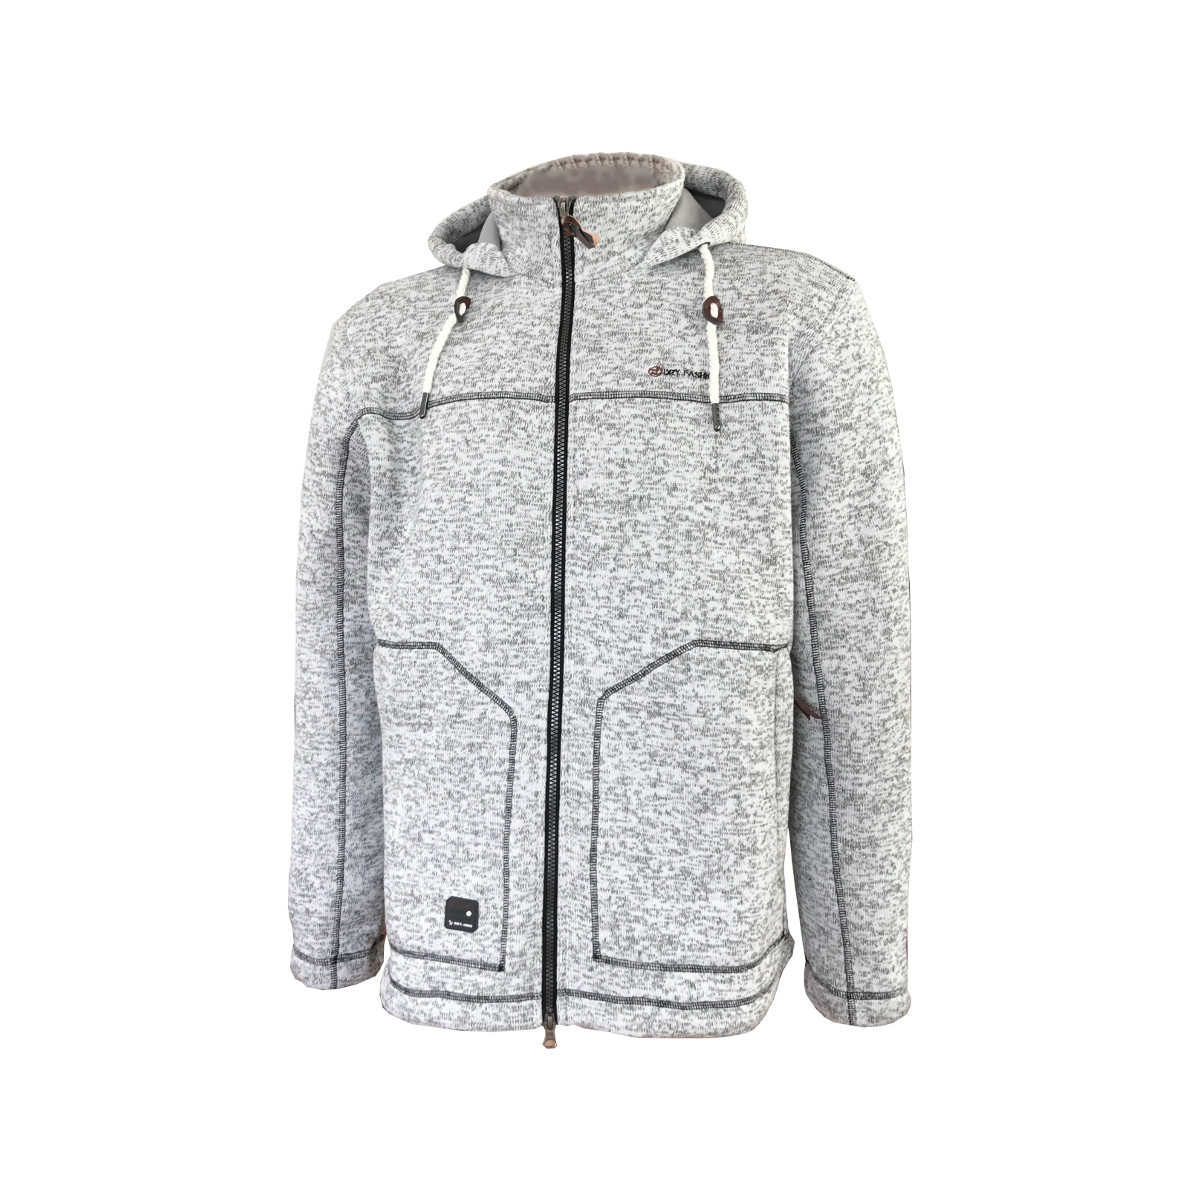 Dry Fashion Pellworm veste en polaire tricotée homme gris chiné, taille S